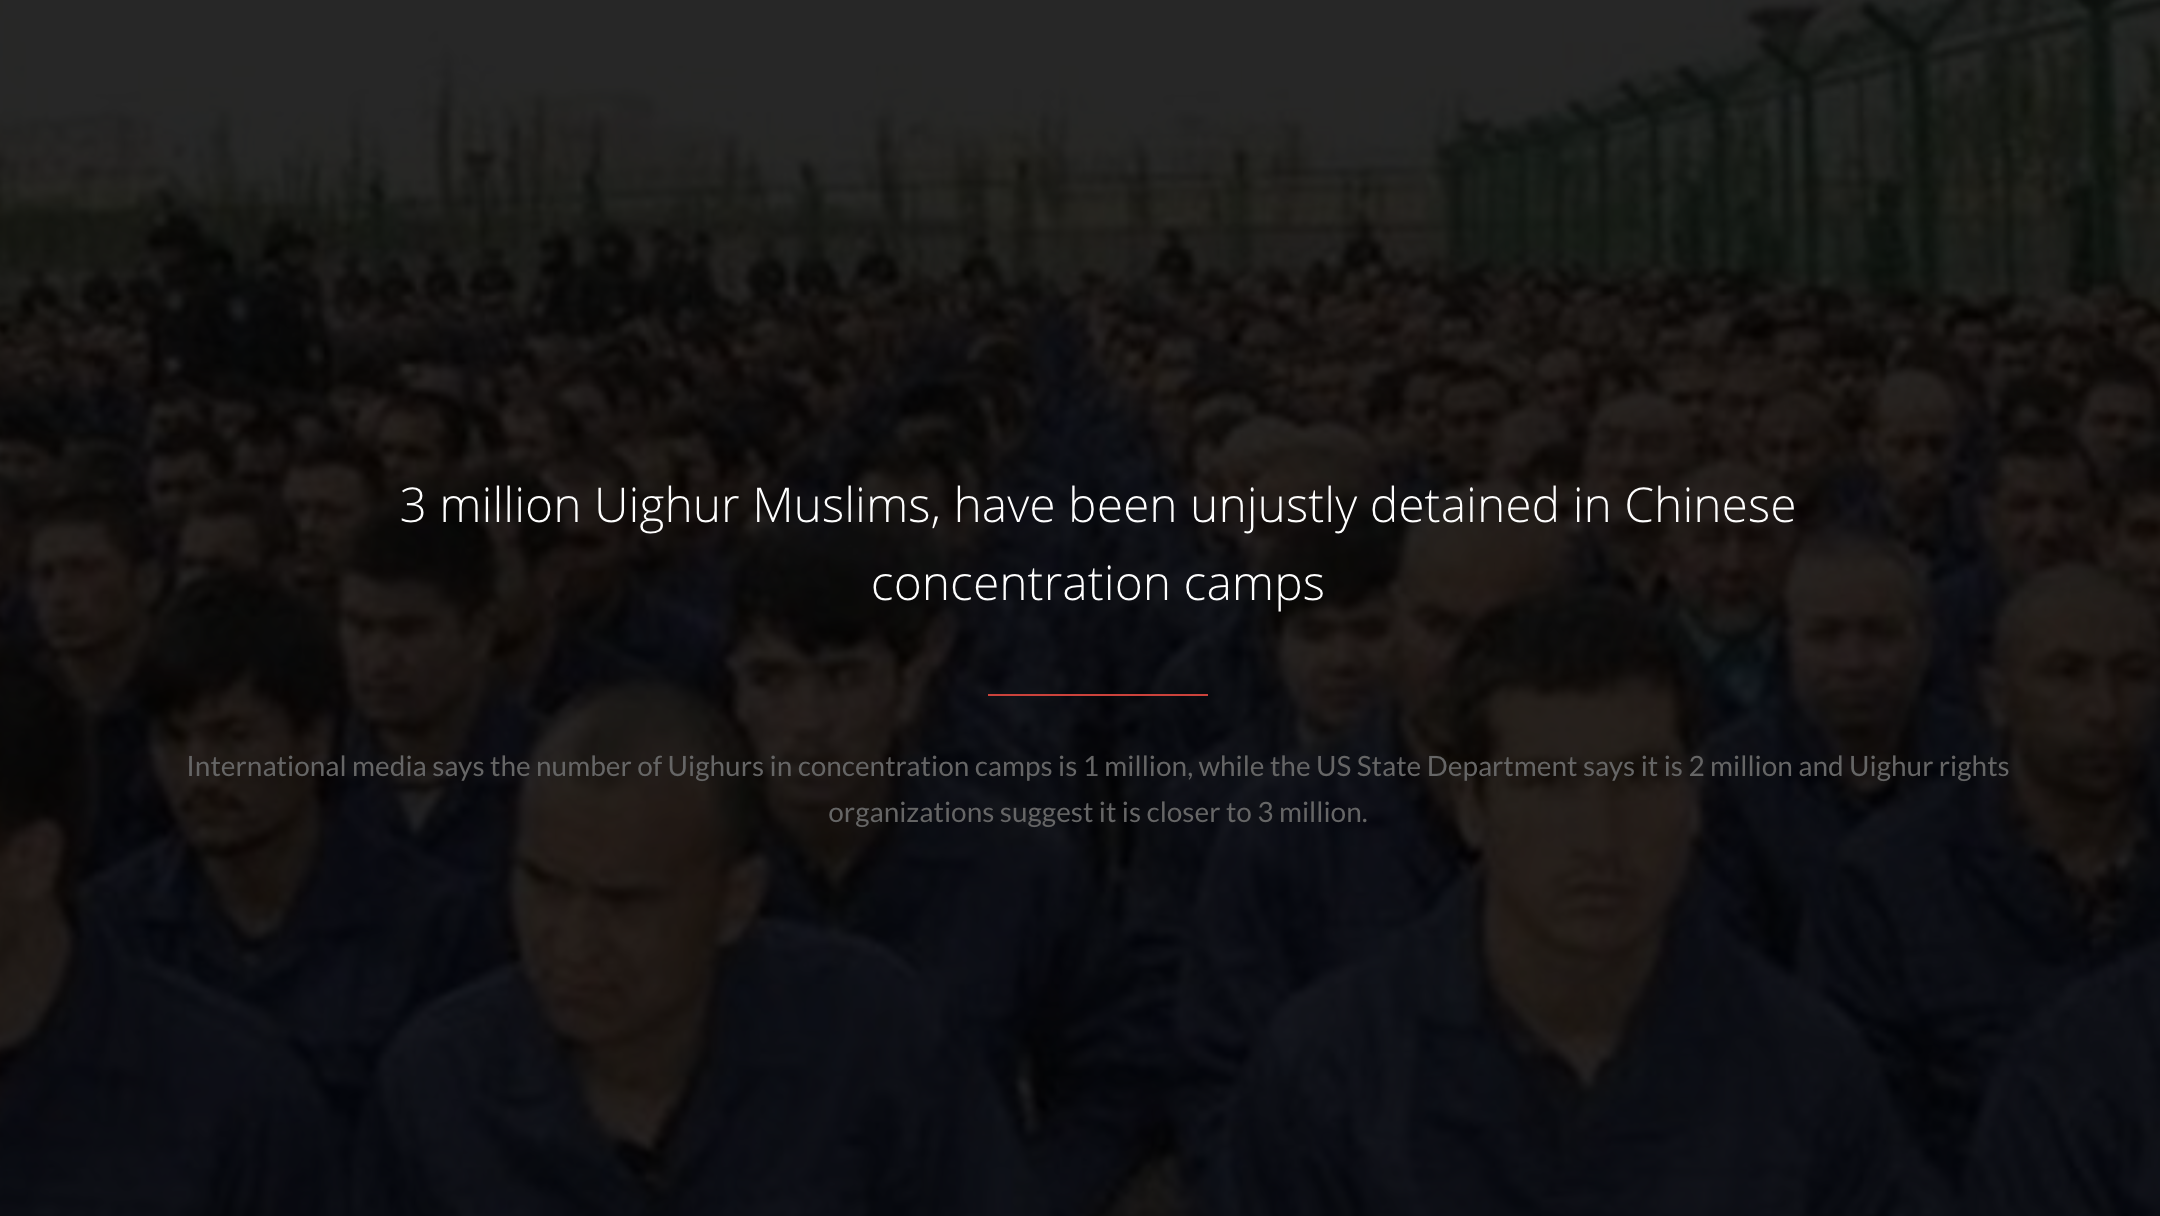 Save Uyghur